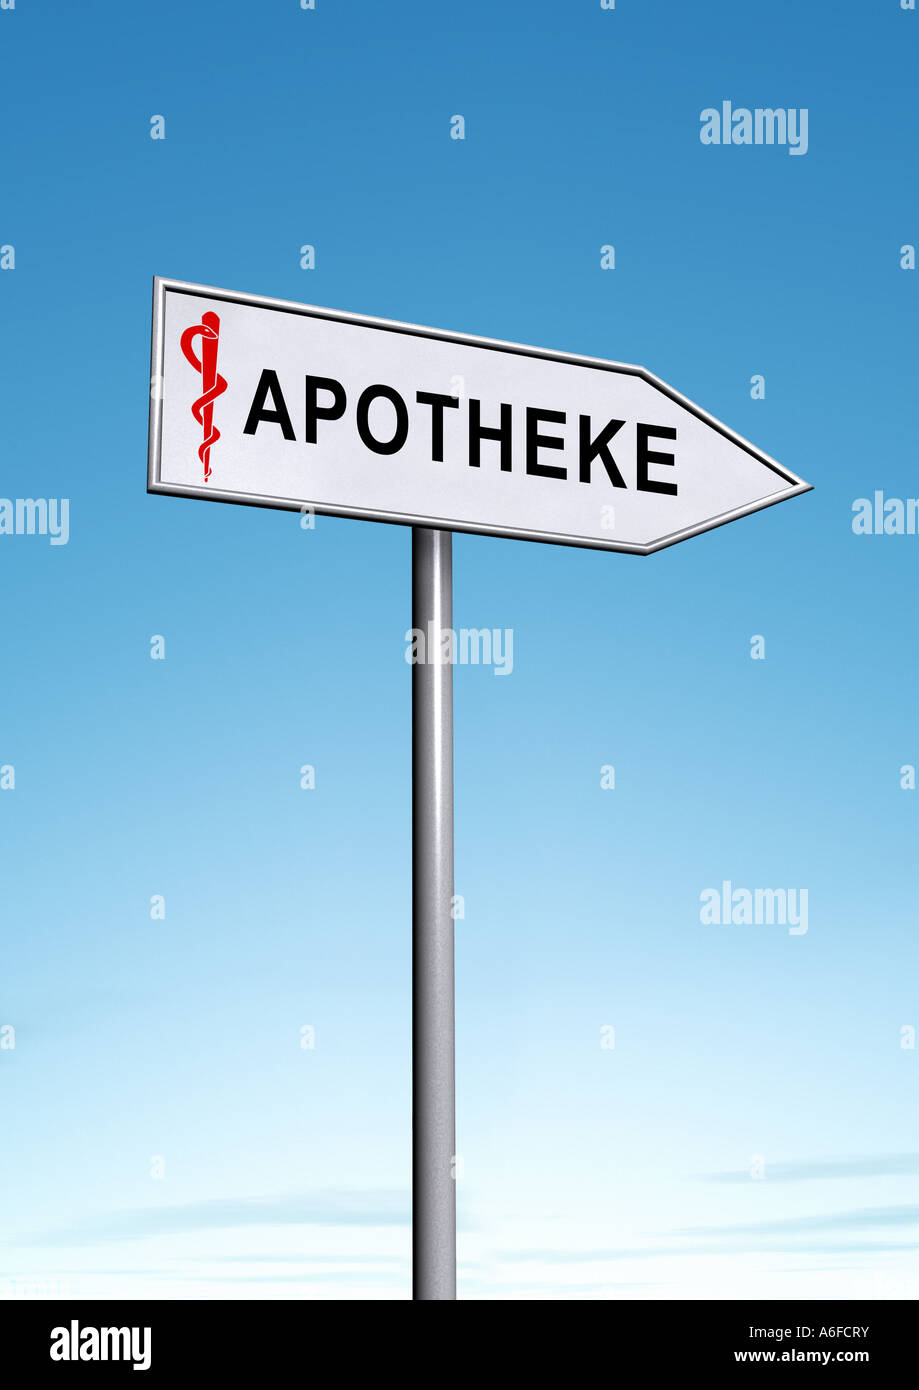 pharmacy Apotheke Stock Photo